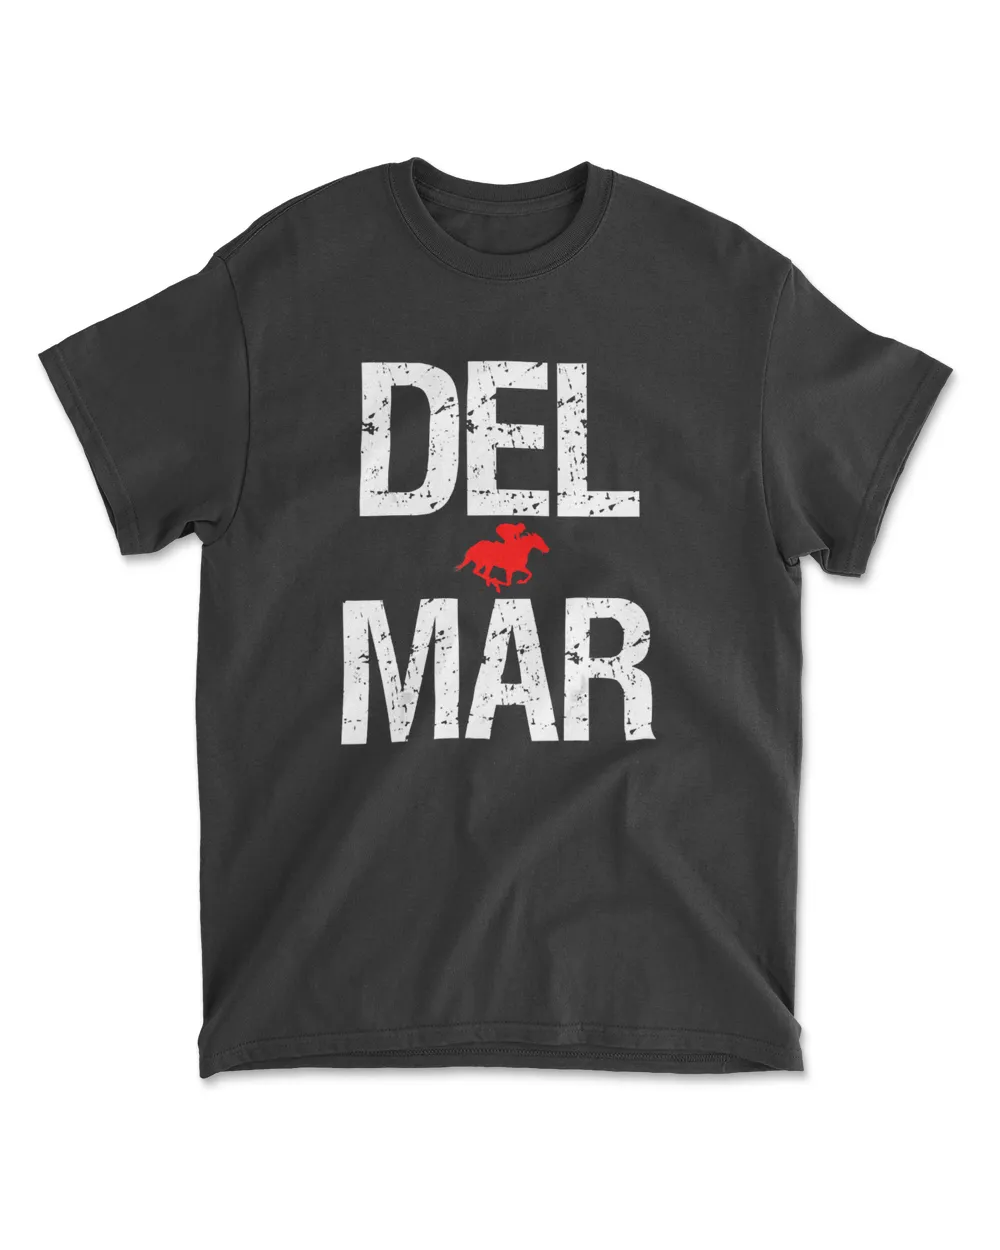 Del Mar California Horse Racing T-Shirt